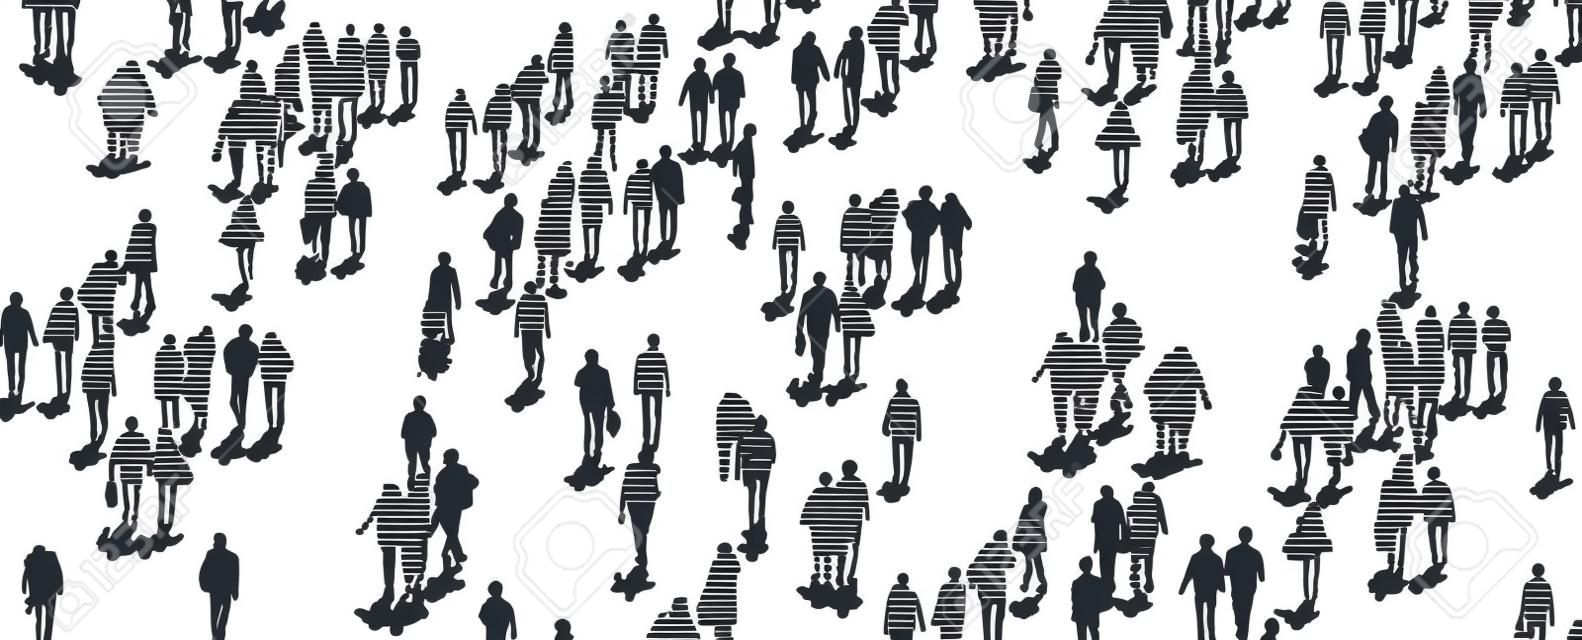 Illustration vectorielle de foule de personnes marchant du point de vue de la vue grand angle